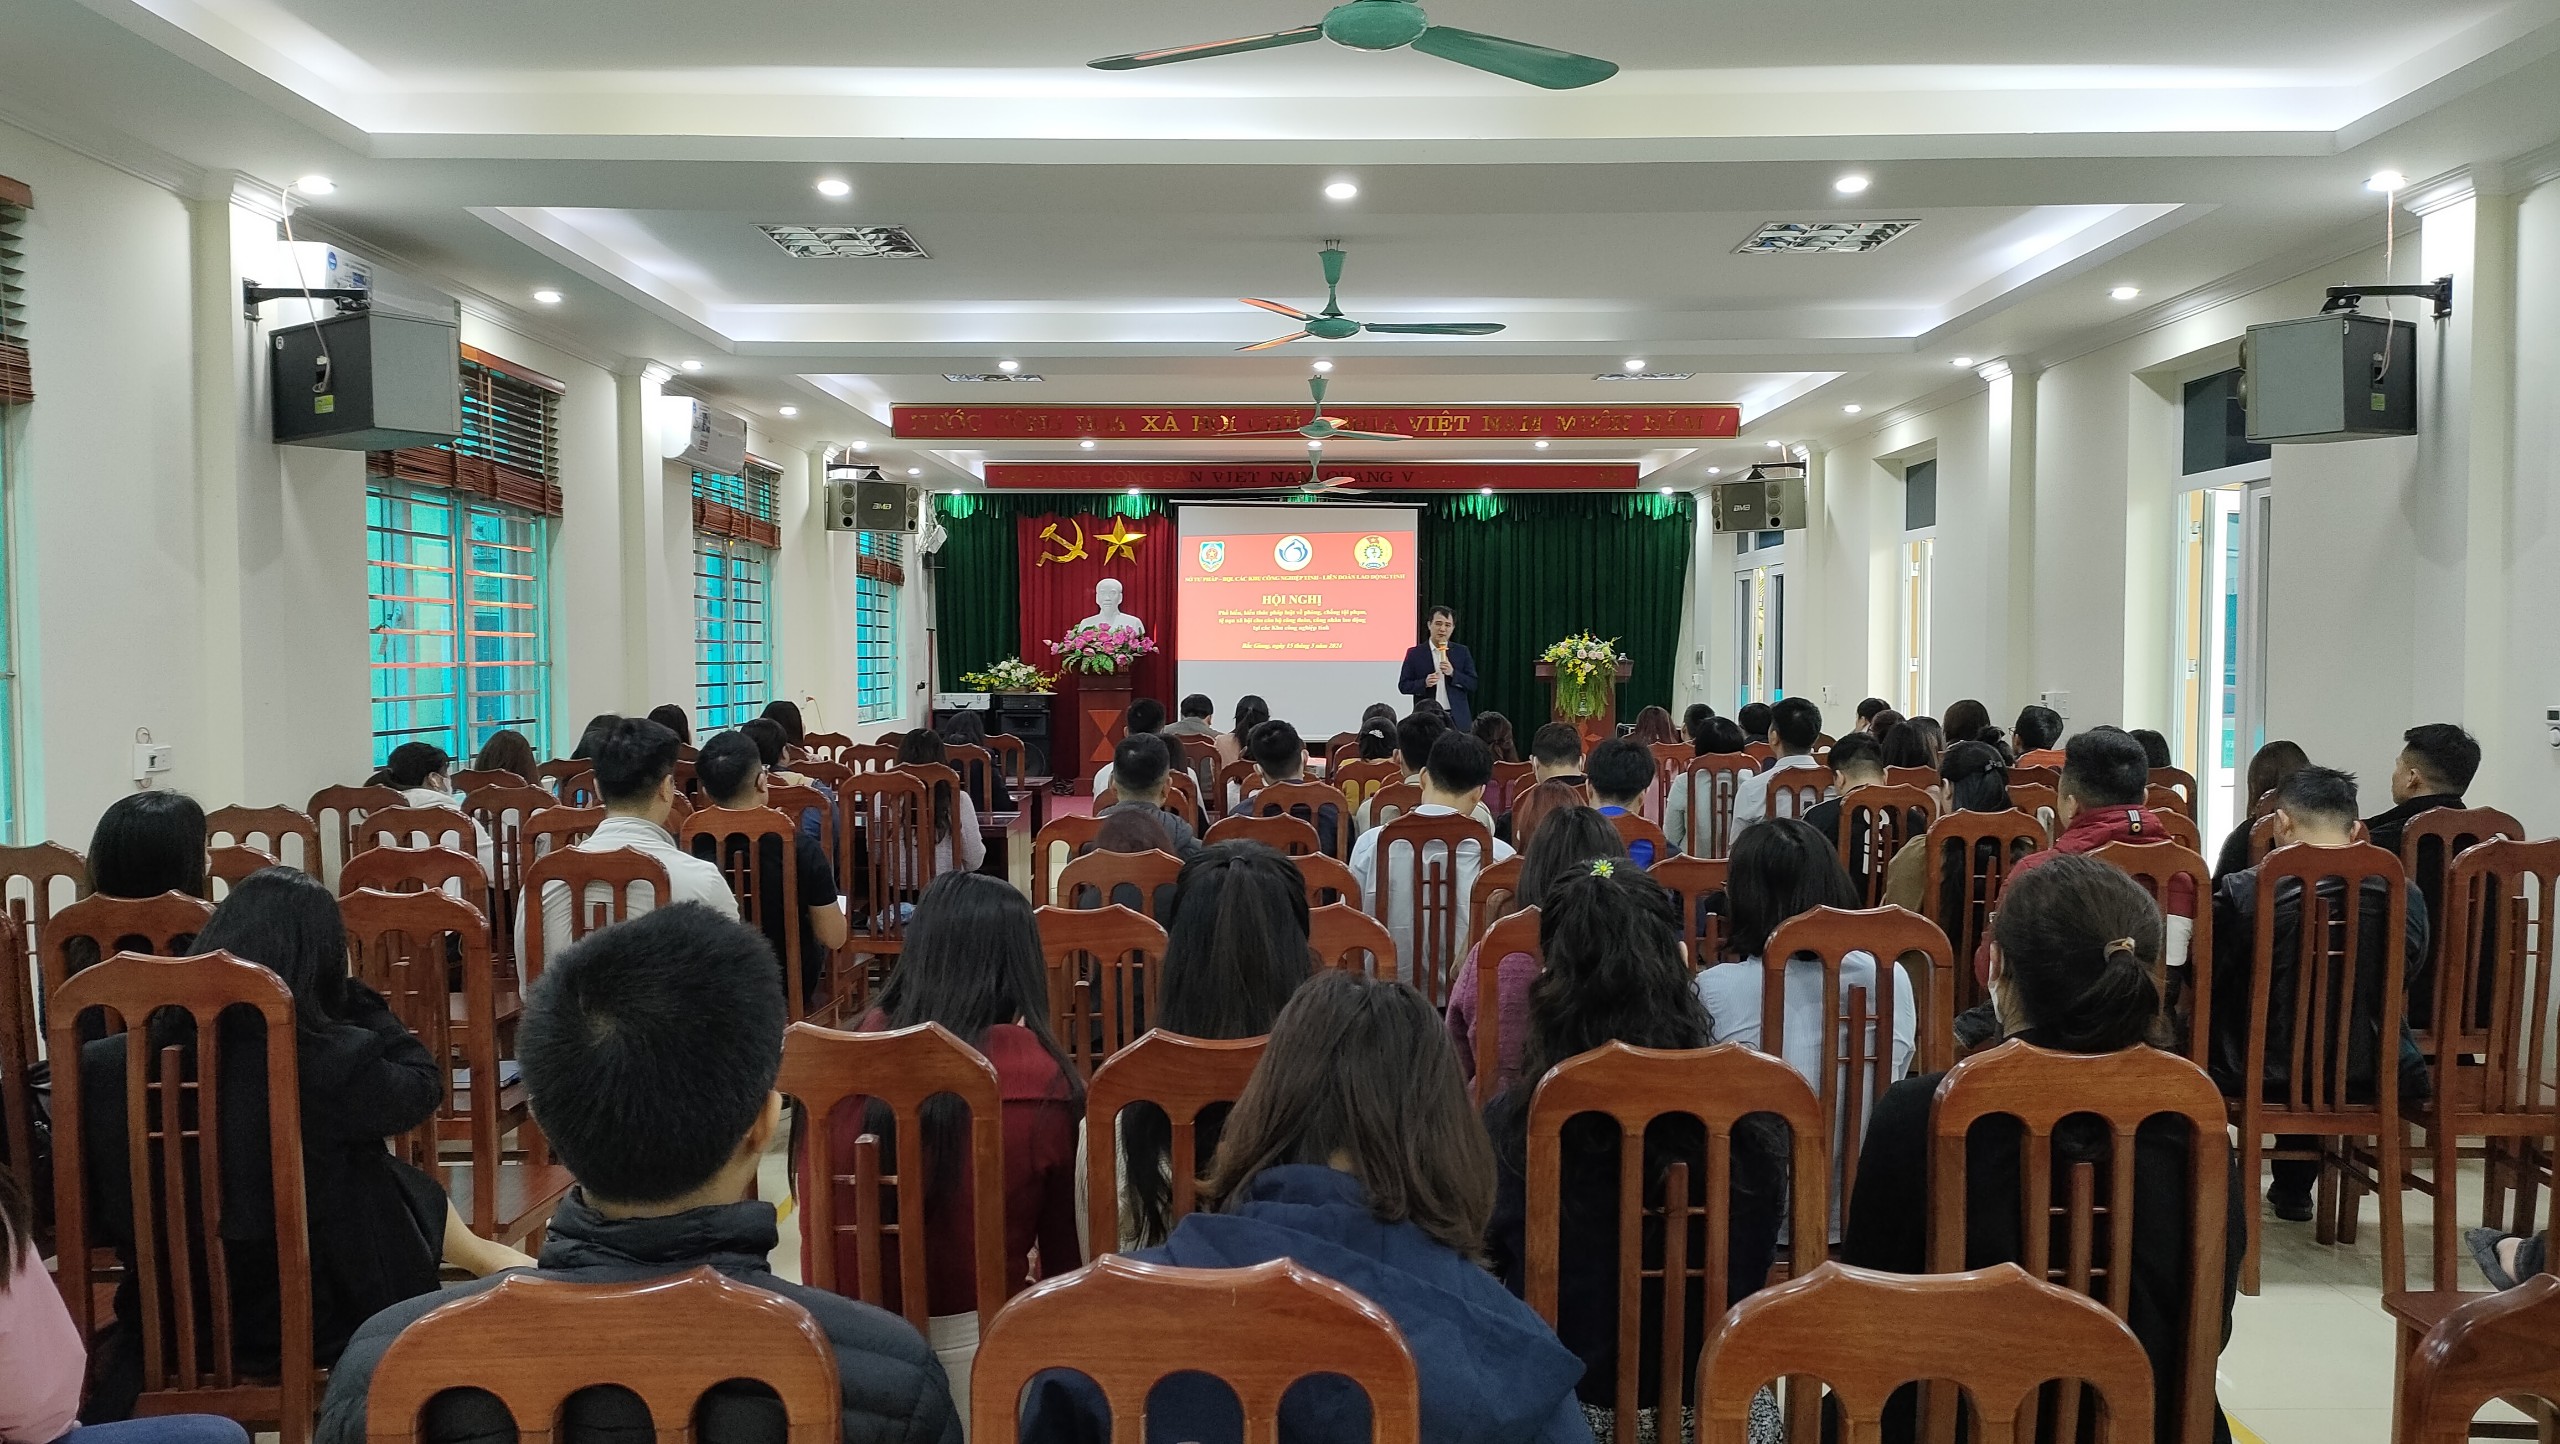 Hội nghị tuyên truyền, phổ biến về phòng, chống tội phạm, tệ nạn xã hội tại các Khu công nghiệp trên địa bàn tỉnh Bắc Giang|https://bqlkcn.bacgiang.gov.vn/ja_JP/chi-tiet-tin-tuc/-/asset_publisher/xme8LCPEx4VA/content/hoi-nghi-tuyen-truyen-pho-bien-ve-phong-chong-toi-pham-te-nan-xa-hoi-tai-cac-khu-cong-nghiep-tren-ia-ban-tinh-bac-giang